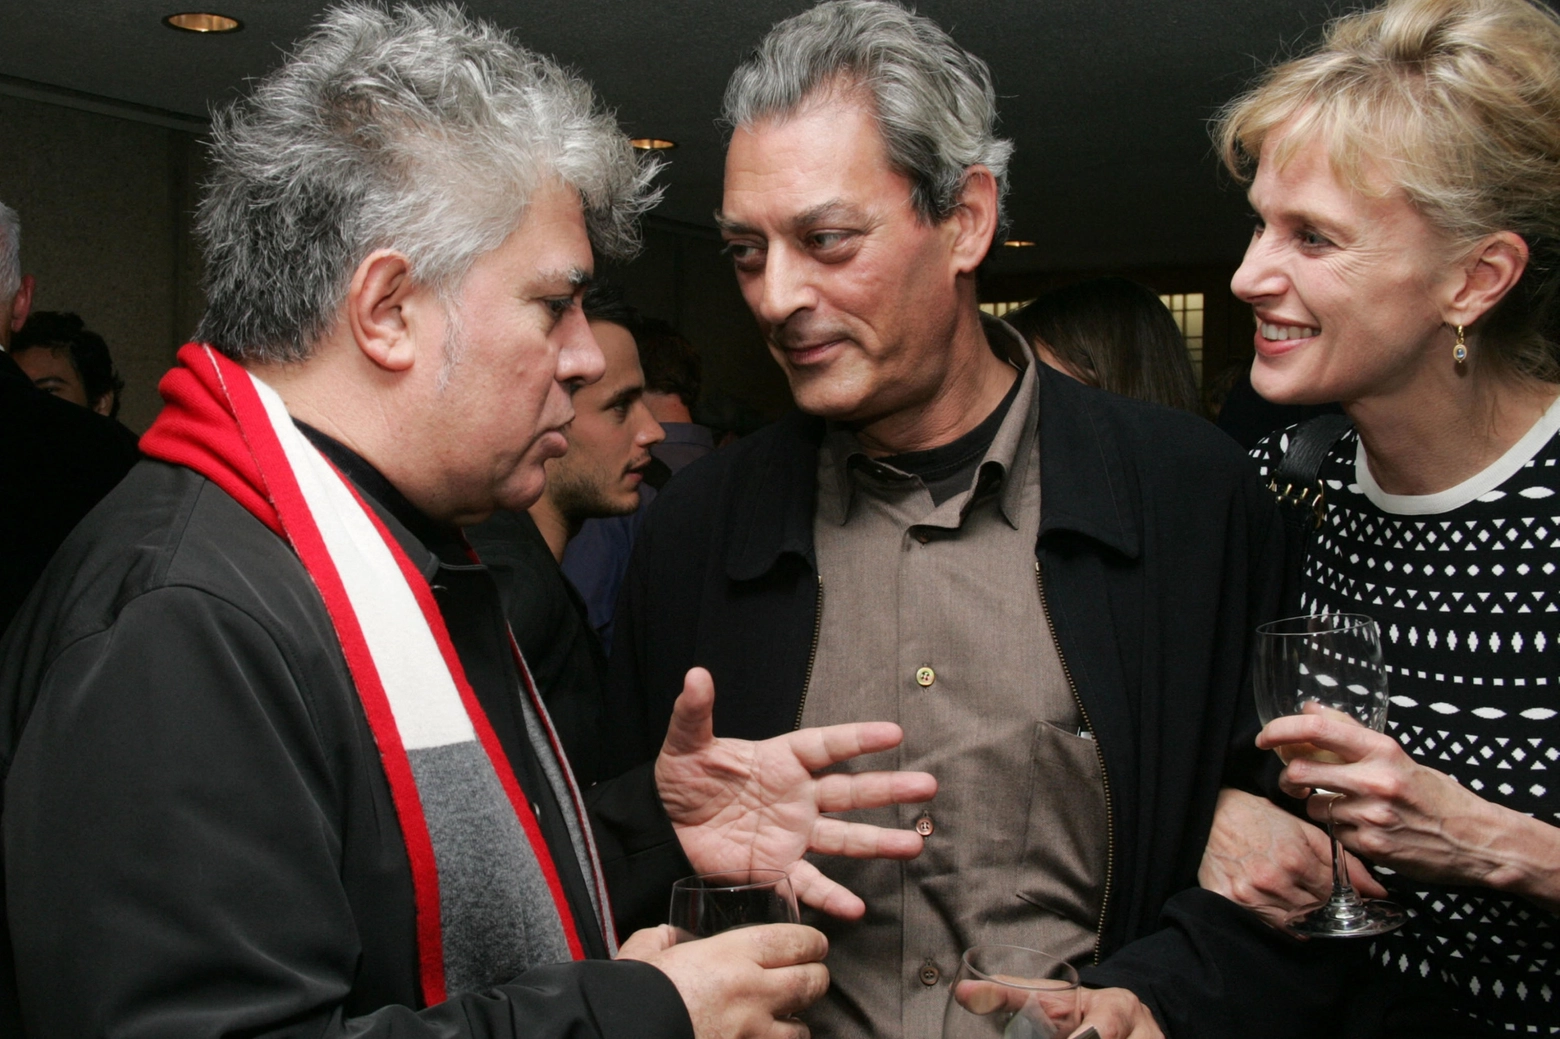 Lo scrittore Paul Auster, morto a 77 anni, con la moglie Siri e il regista Almodovar